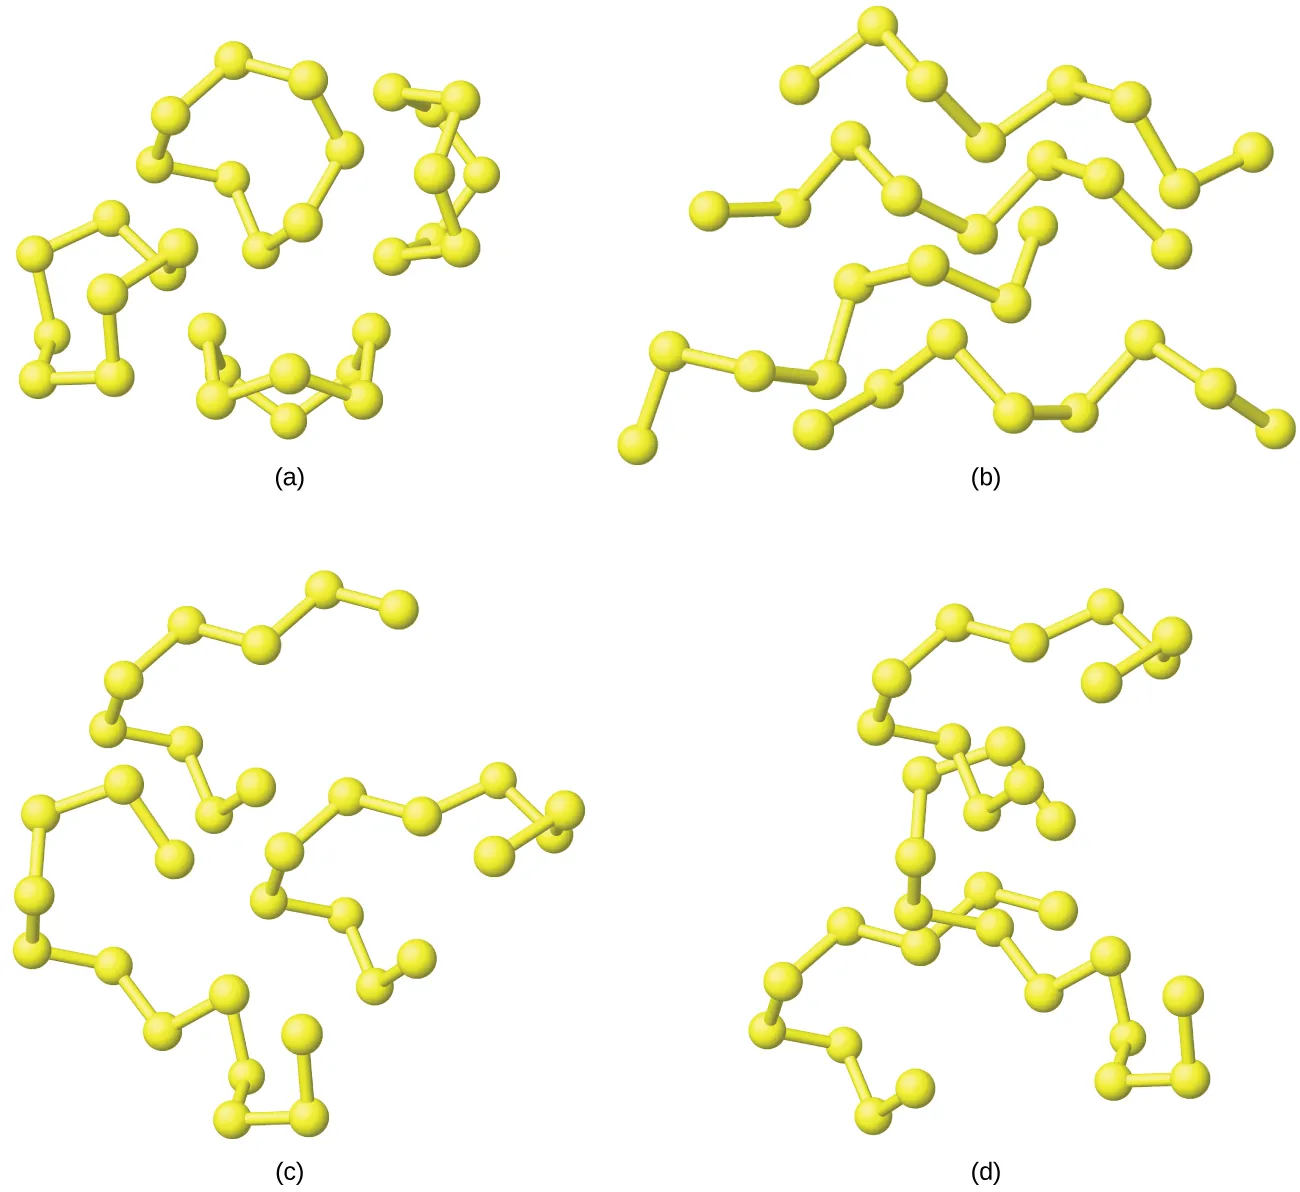 Se muestran cuatro diagramas marcados como "a", "b", "c" y "d". El diagrama a muestra cuatro estructuras de anillo que están formadas cada una por ocho átomos de enlace simple. El diagrama b muestra cuatro cadenas de ocho átomos. El diagrama c muestra tres cadenas de átomos, una compuesta por nueve átomos, otra por doce átomos y otra por once átomos. El diagrama d muestra las mismas tres cadenas, pero esta vez están mucho más juntas y ligeramente entrelazadas.